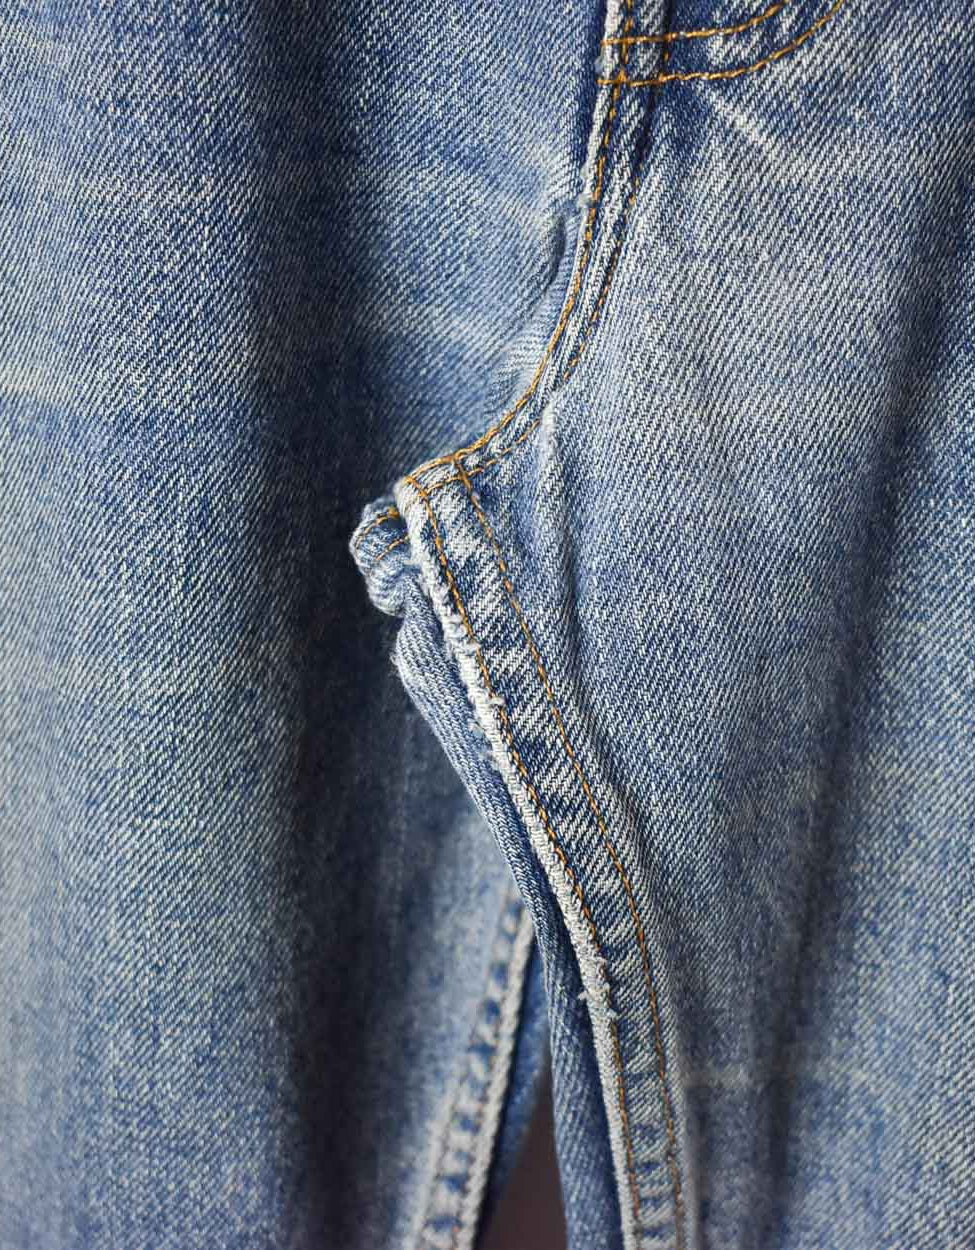 Blue Levi's 505 Jeans - W38 L33